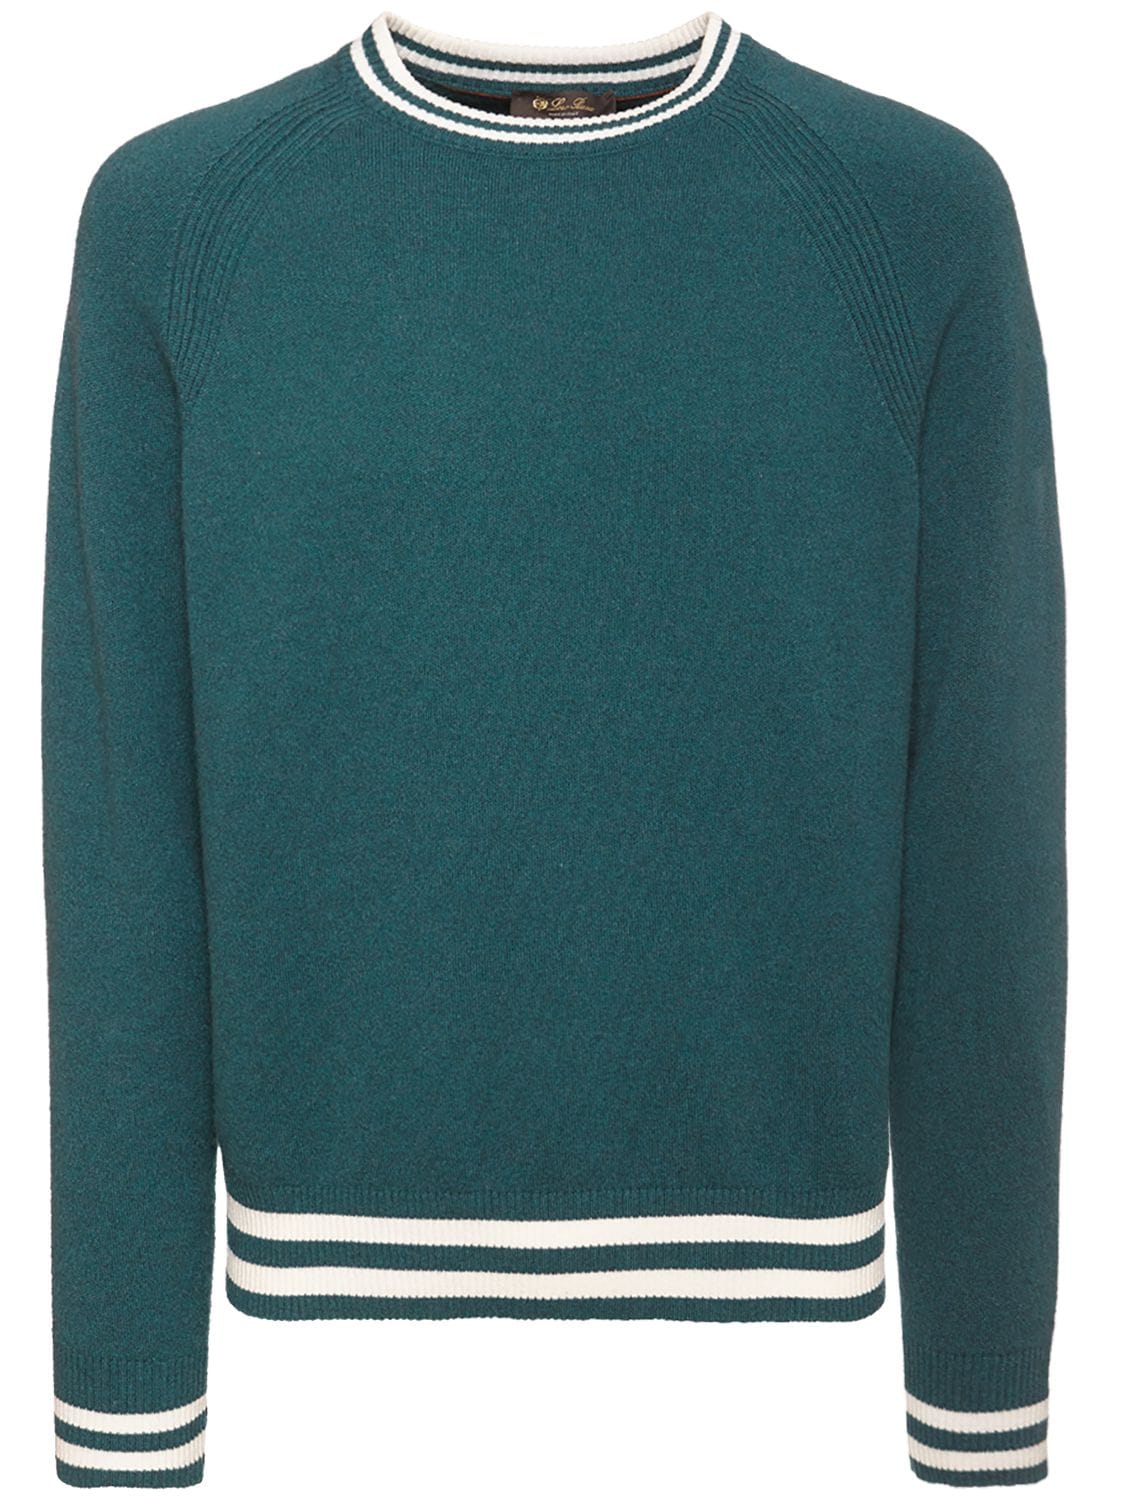 Loro Piana - Wallace cashmere knit sweater - Fir Forest | Luisaviaroma